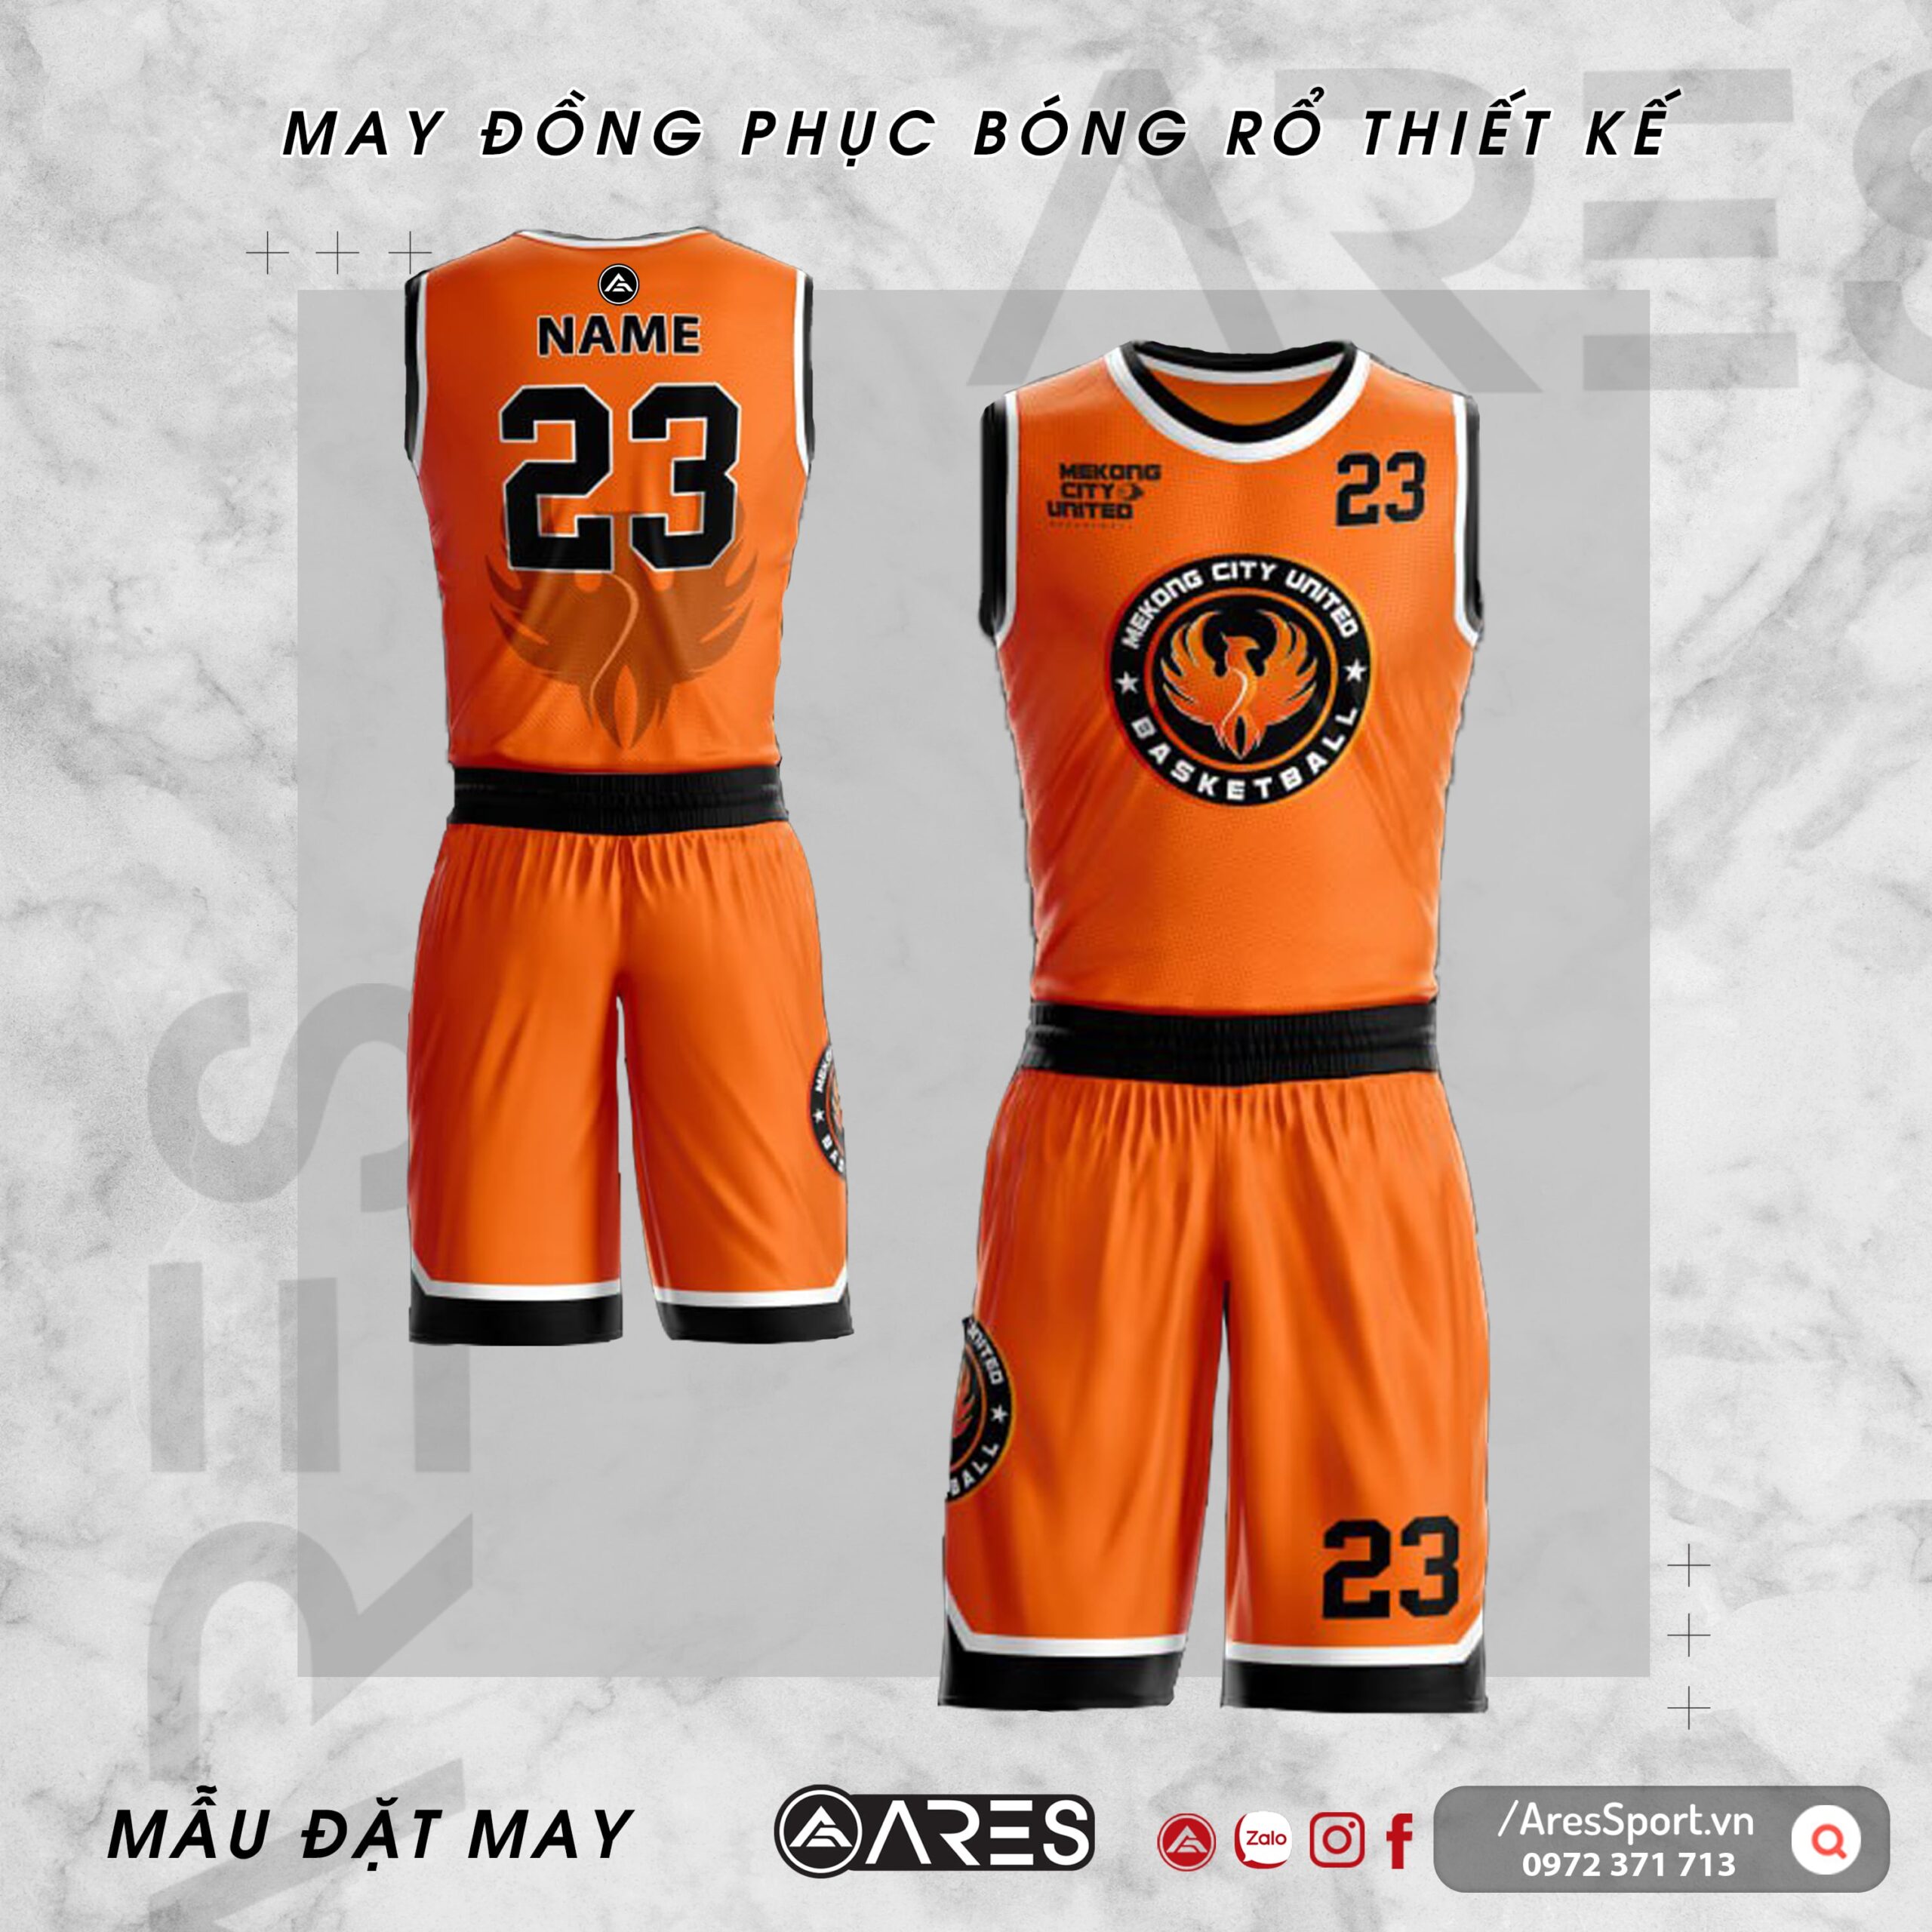 Đồng phục bóng rổ thiết kế Mekong City United cam rực rỡ nổi bật